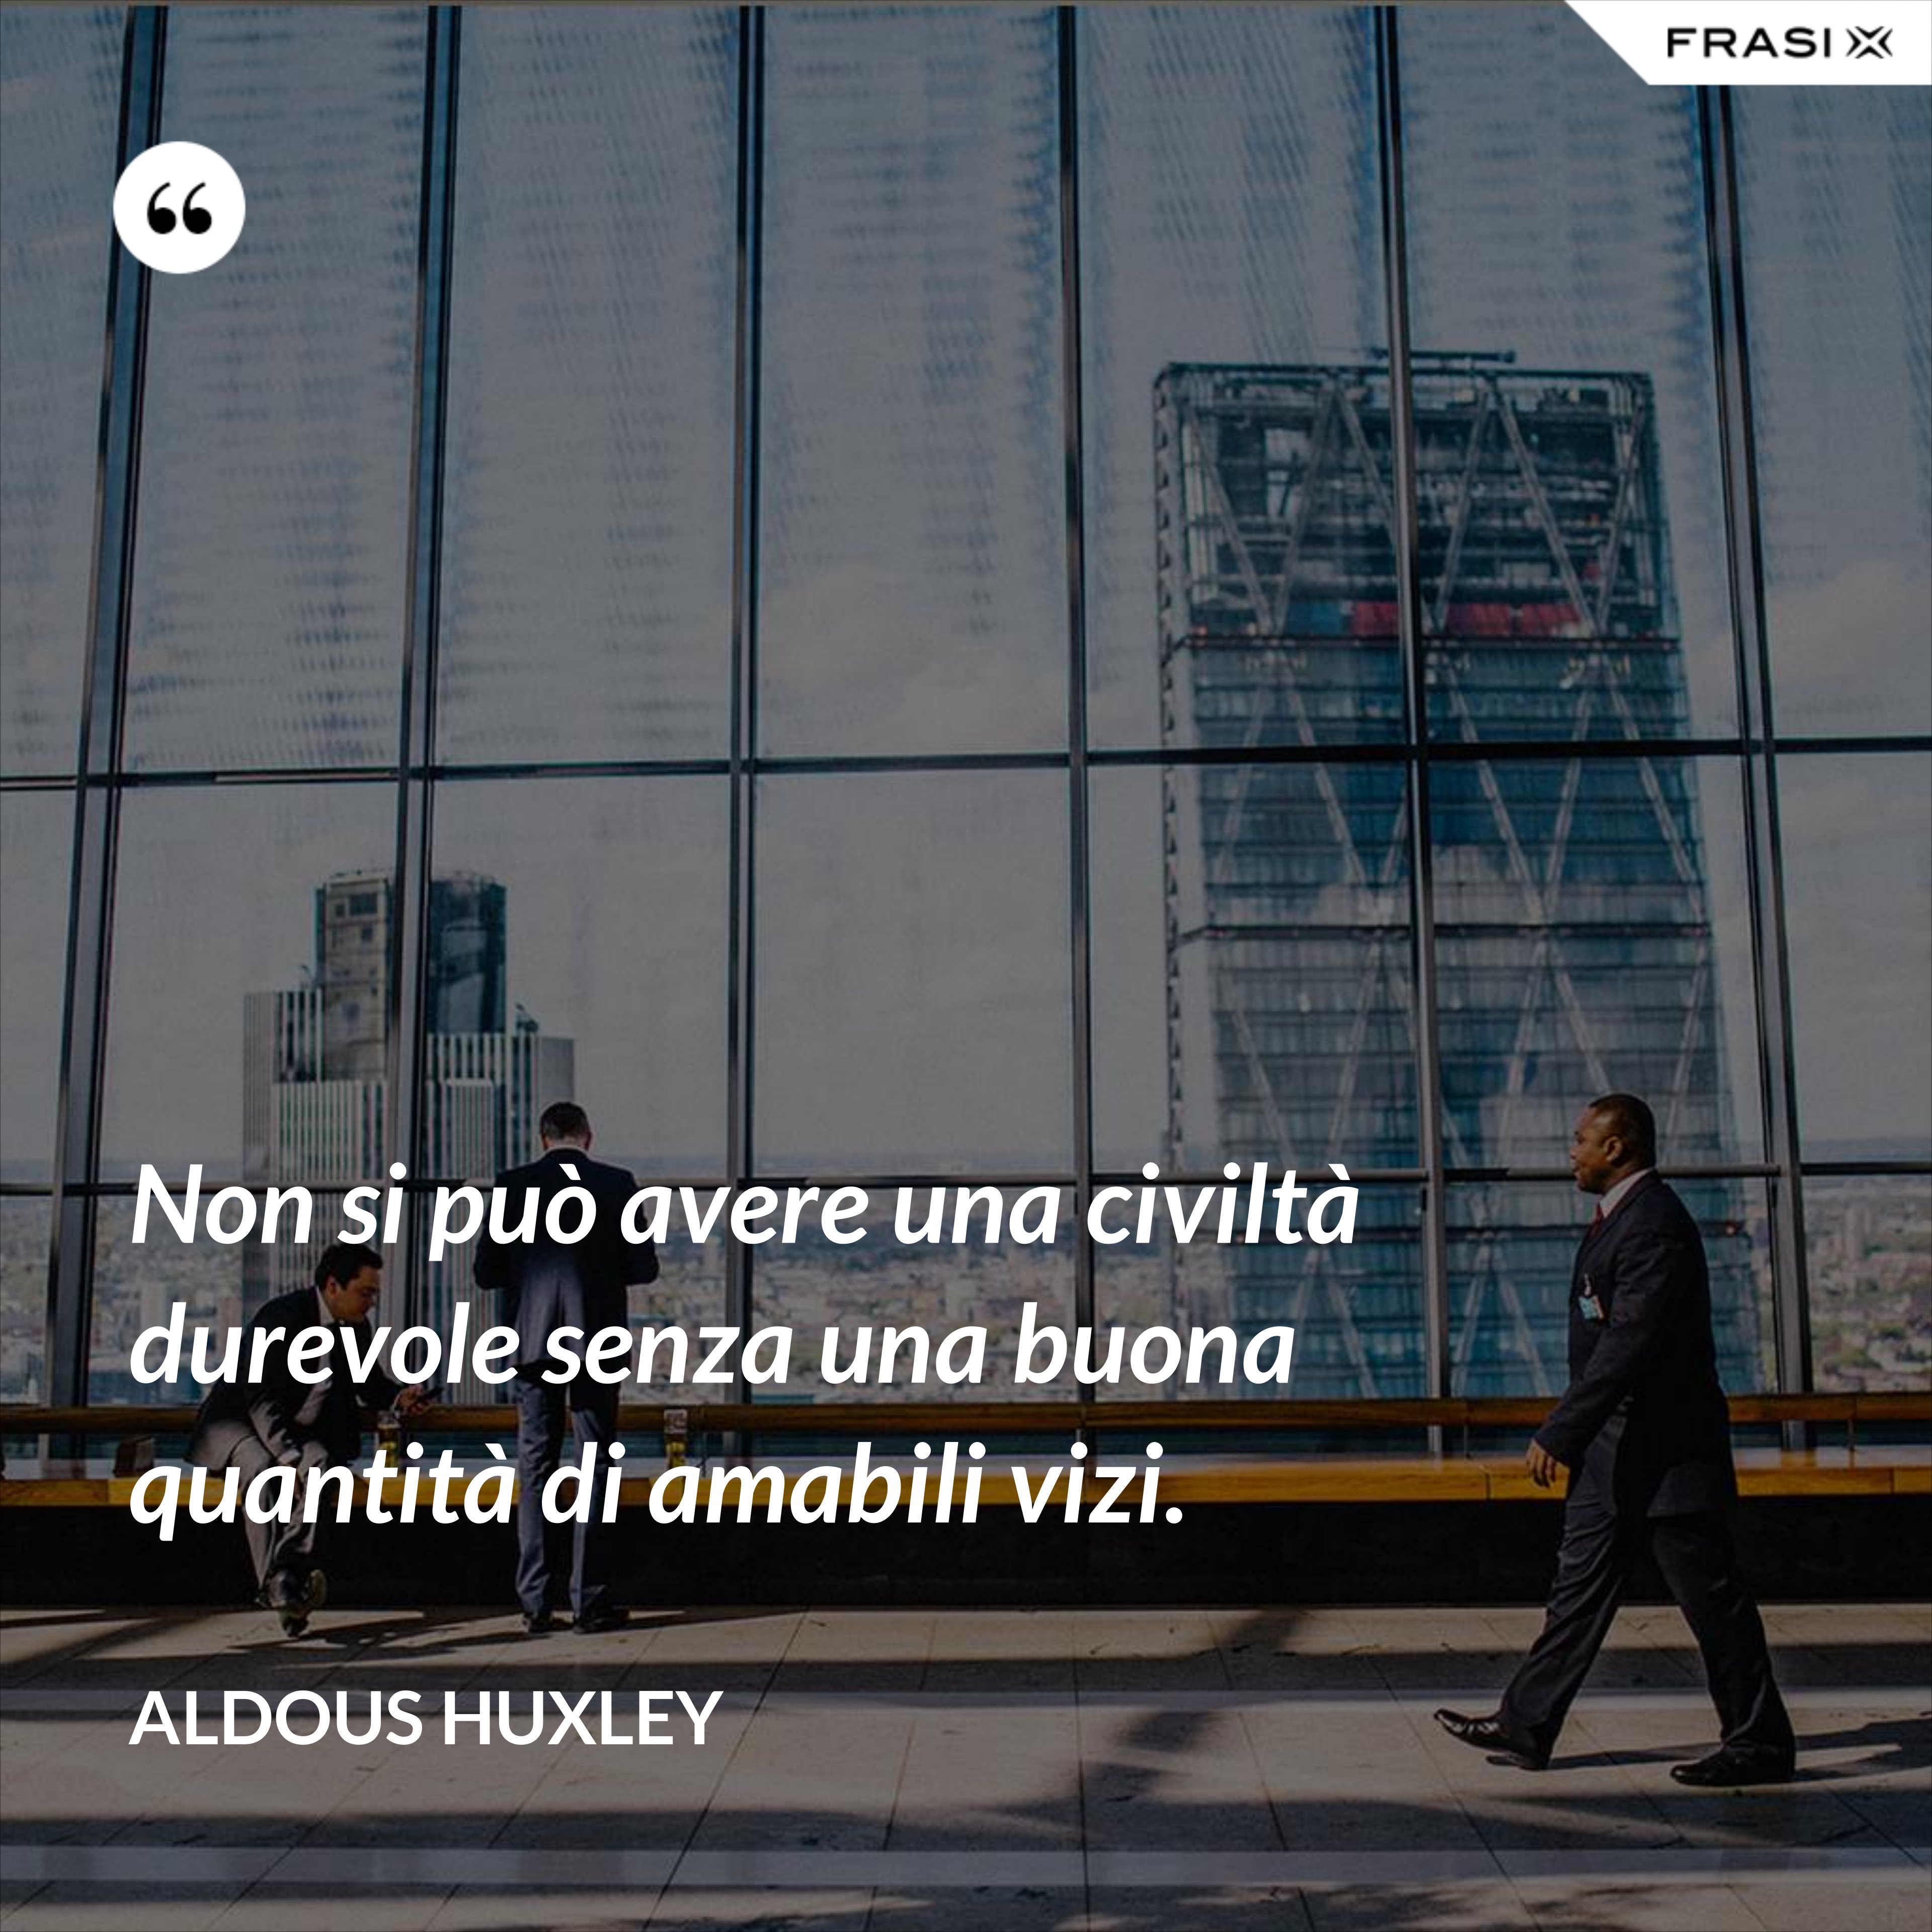 Non si può avere una civiltà durevole senza una buona quantità di amabili vizi. - Aldous Huxley